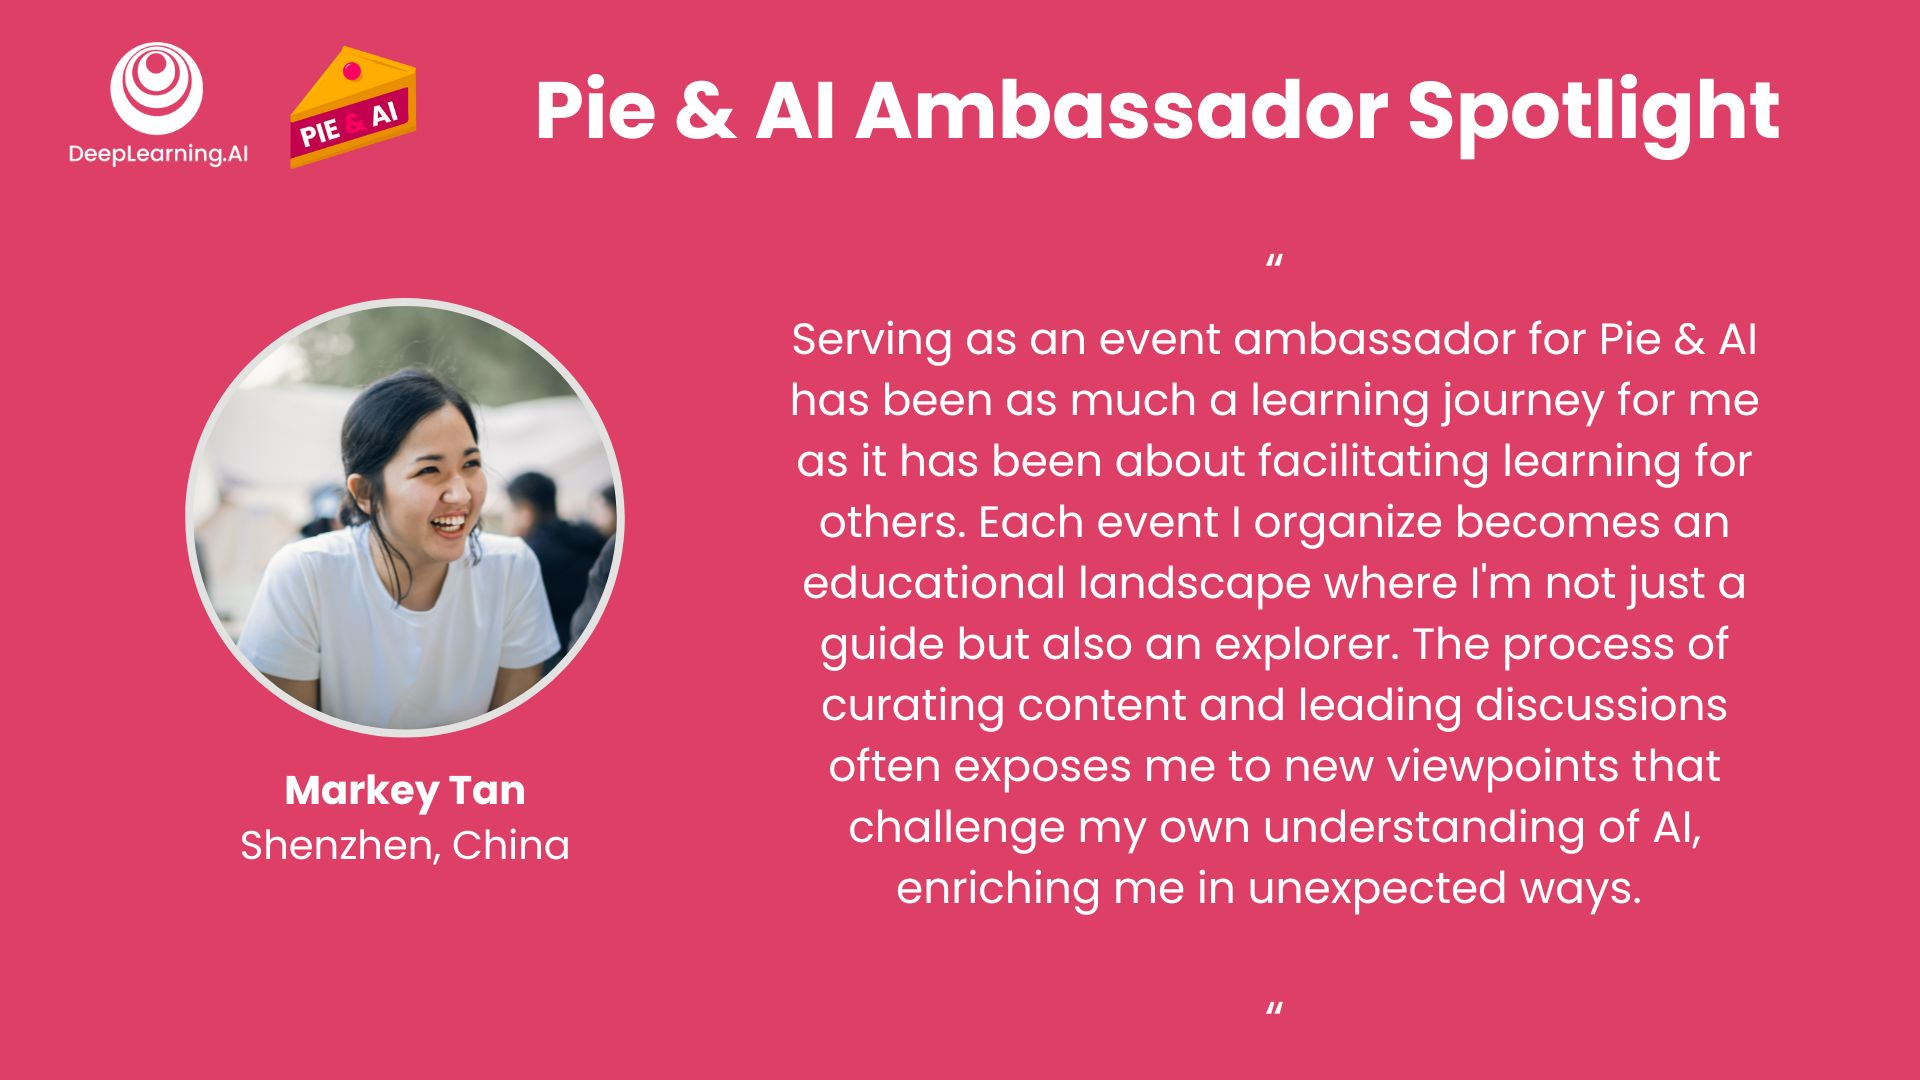 Pie & AI Ambassador from China, Markey Tan